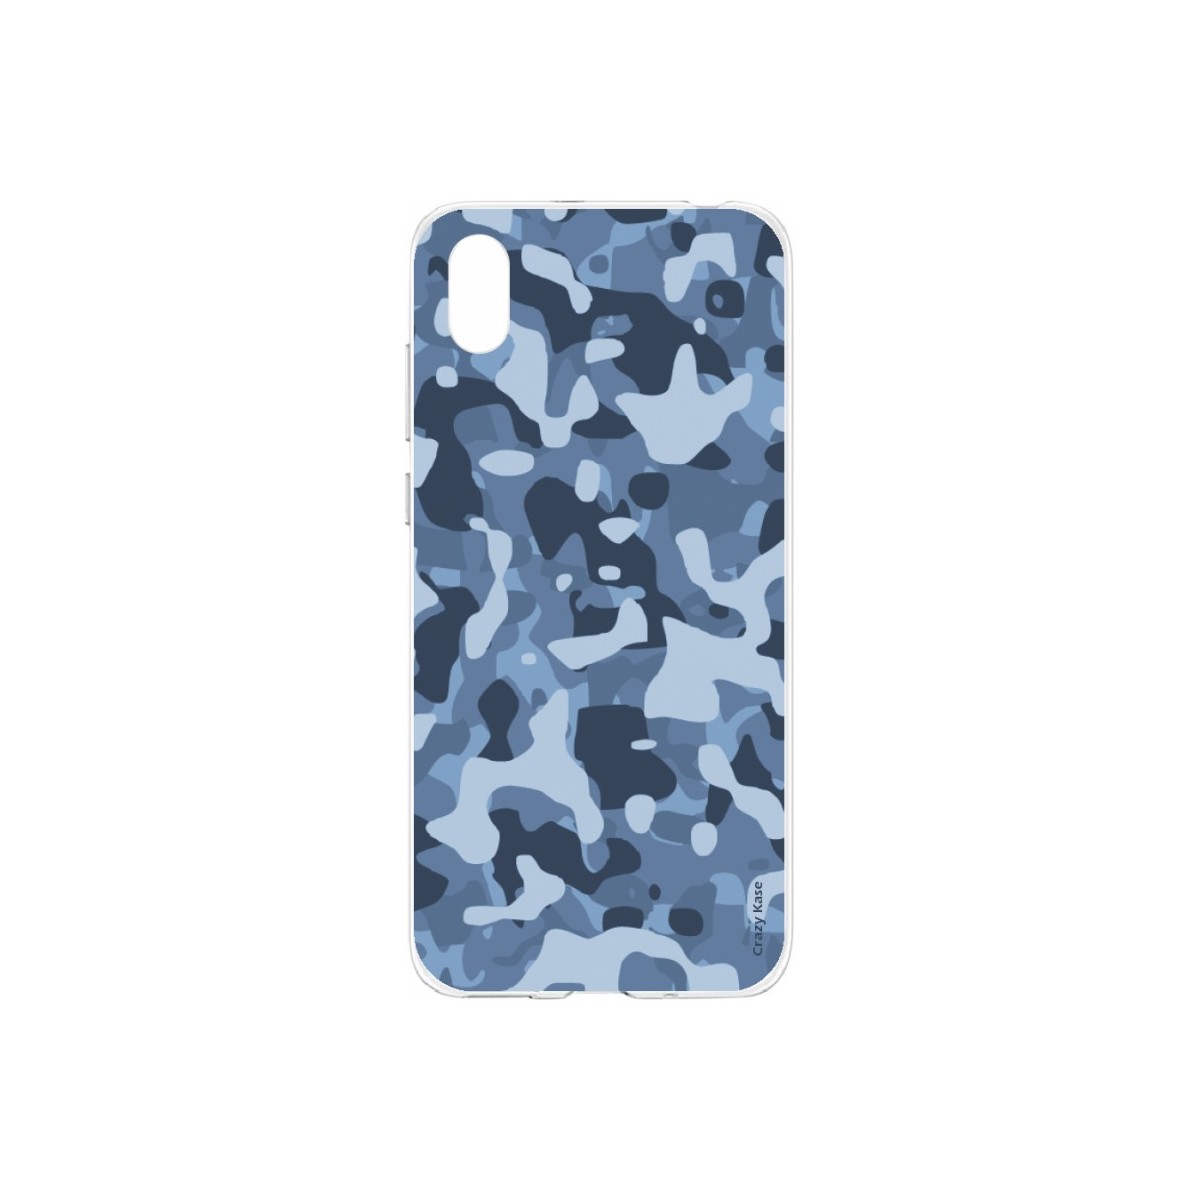 Coque Huawei Y5 2019 souple Camouflage militaire bleu Crazy Kase